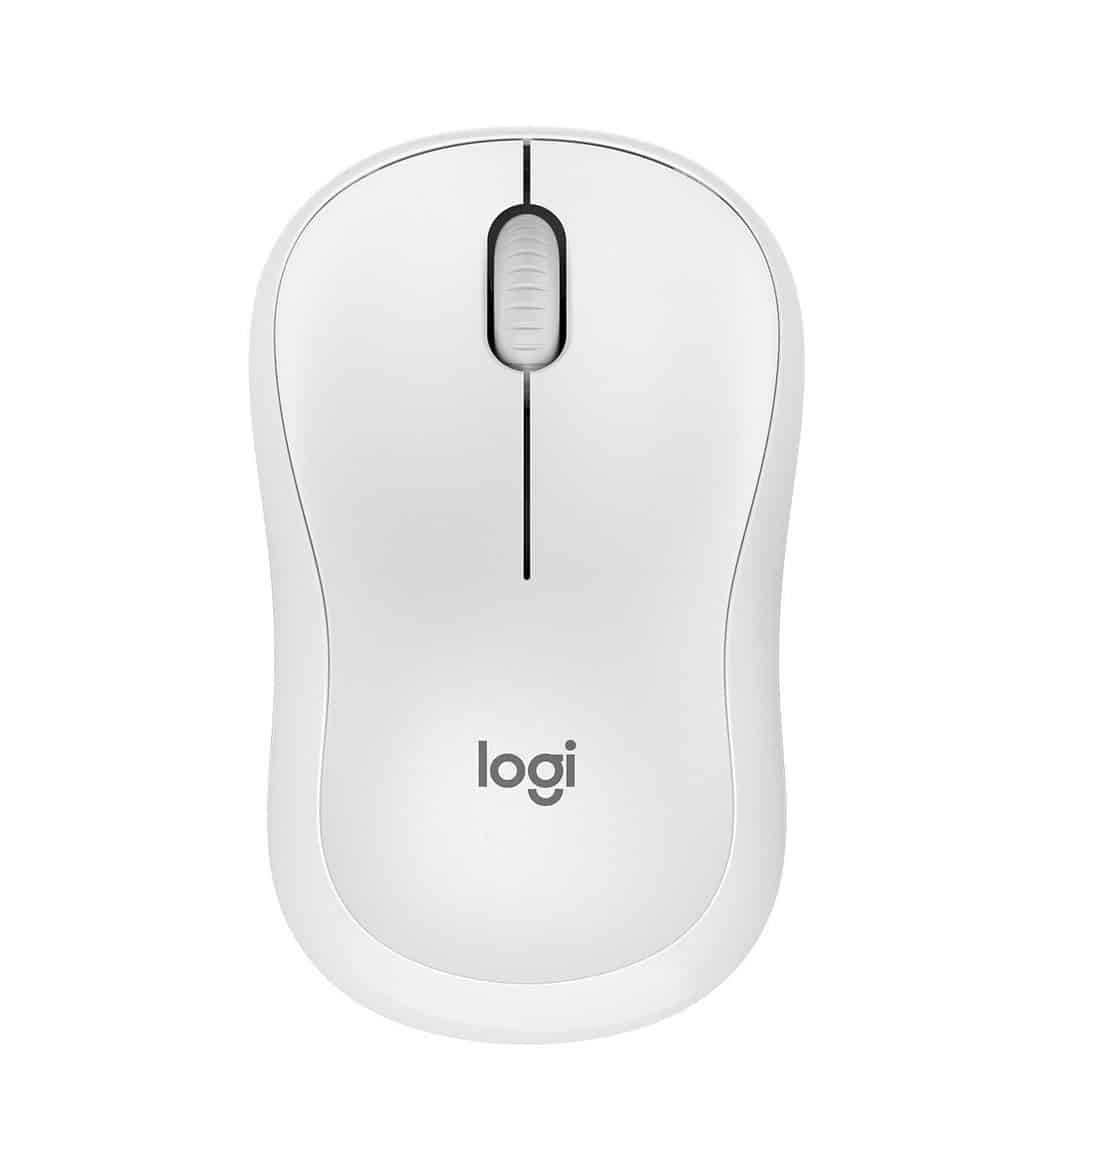 แนะนำสินค้า Logitech_Logitech M220 Silent USB Mouse White - Mice & Keyboards - Micronet Bahamas